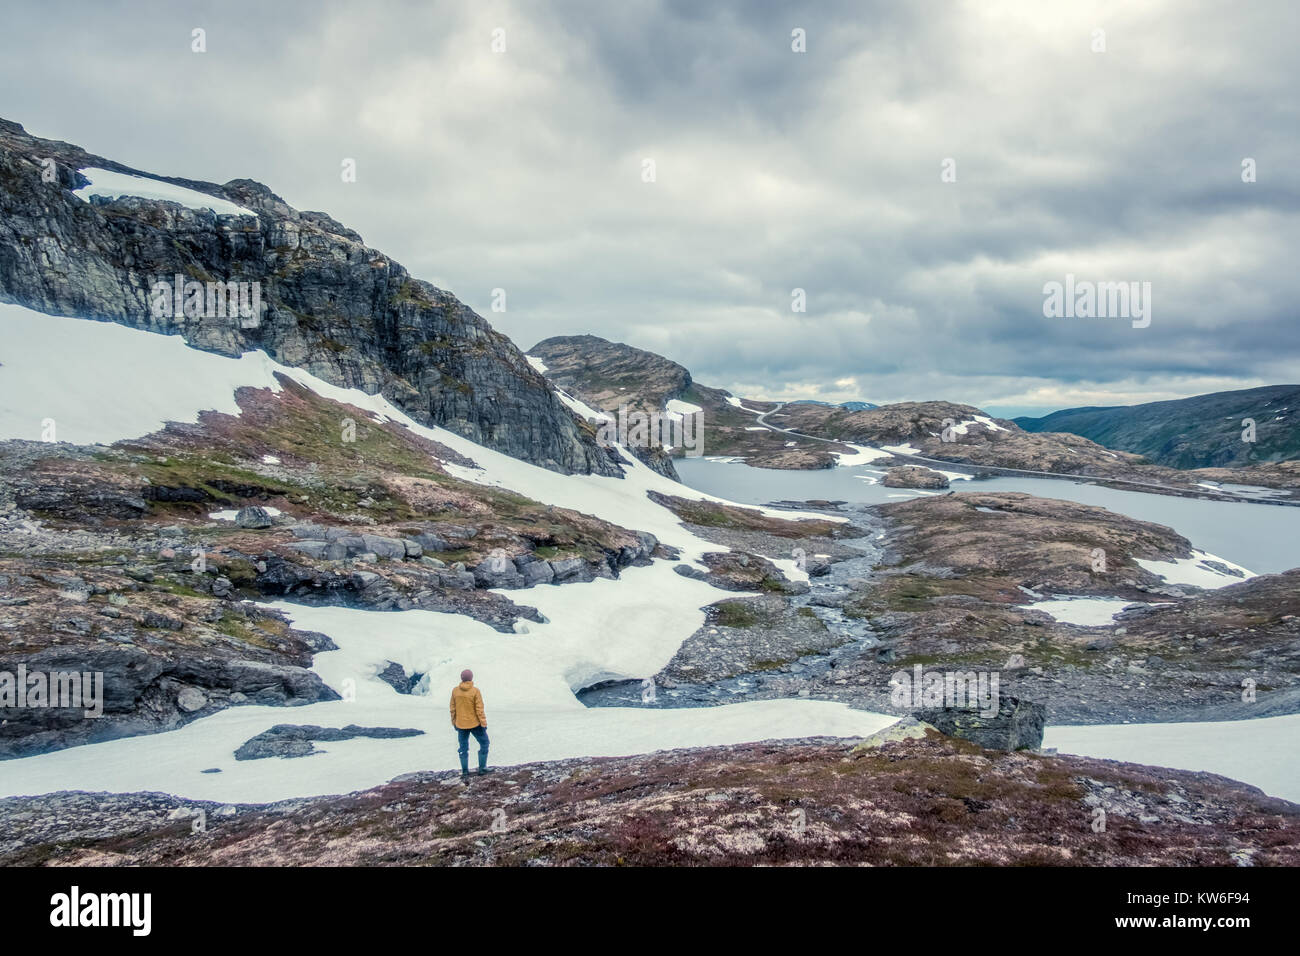 Norvégien typique paysage avec montagnes enneigées Banque D'Images